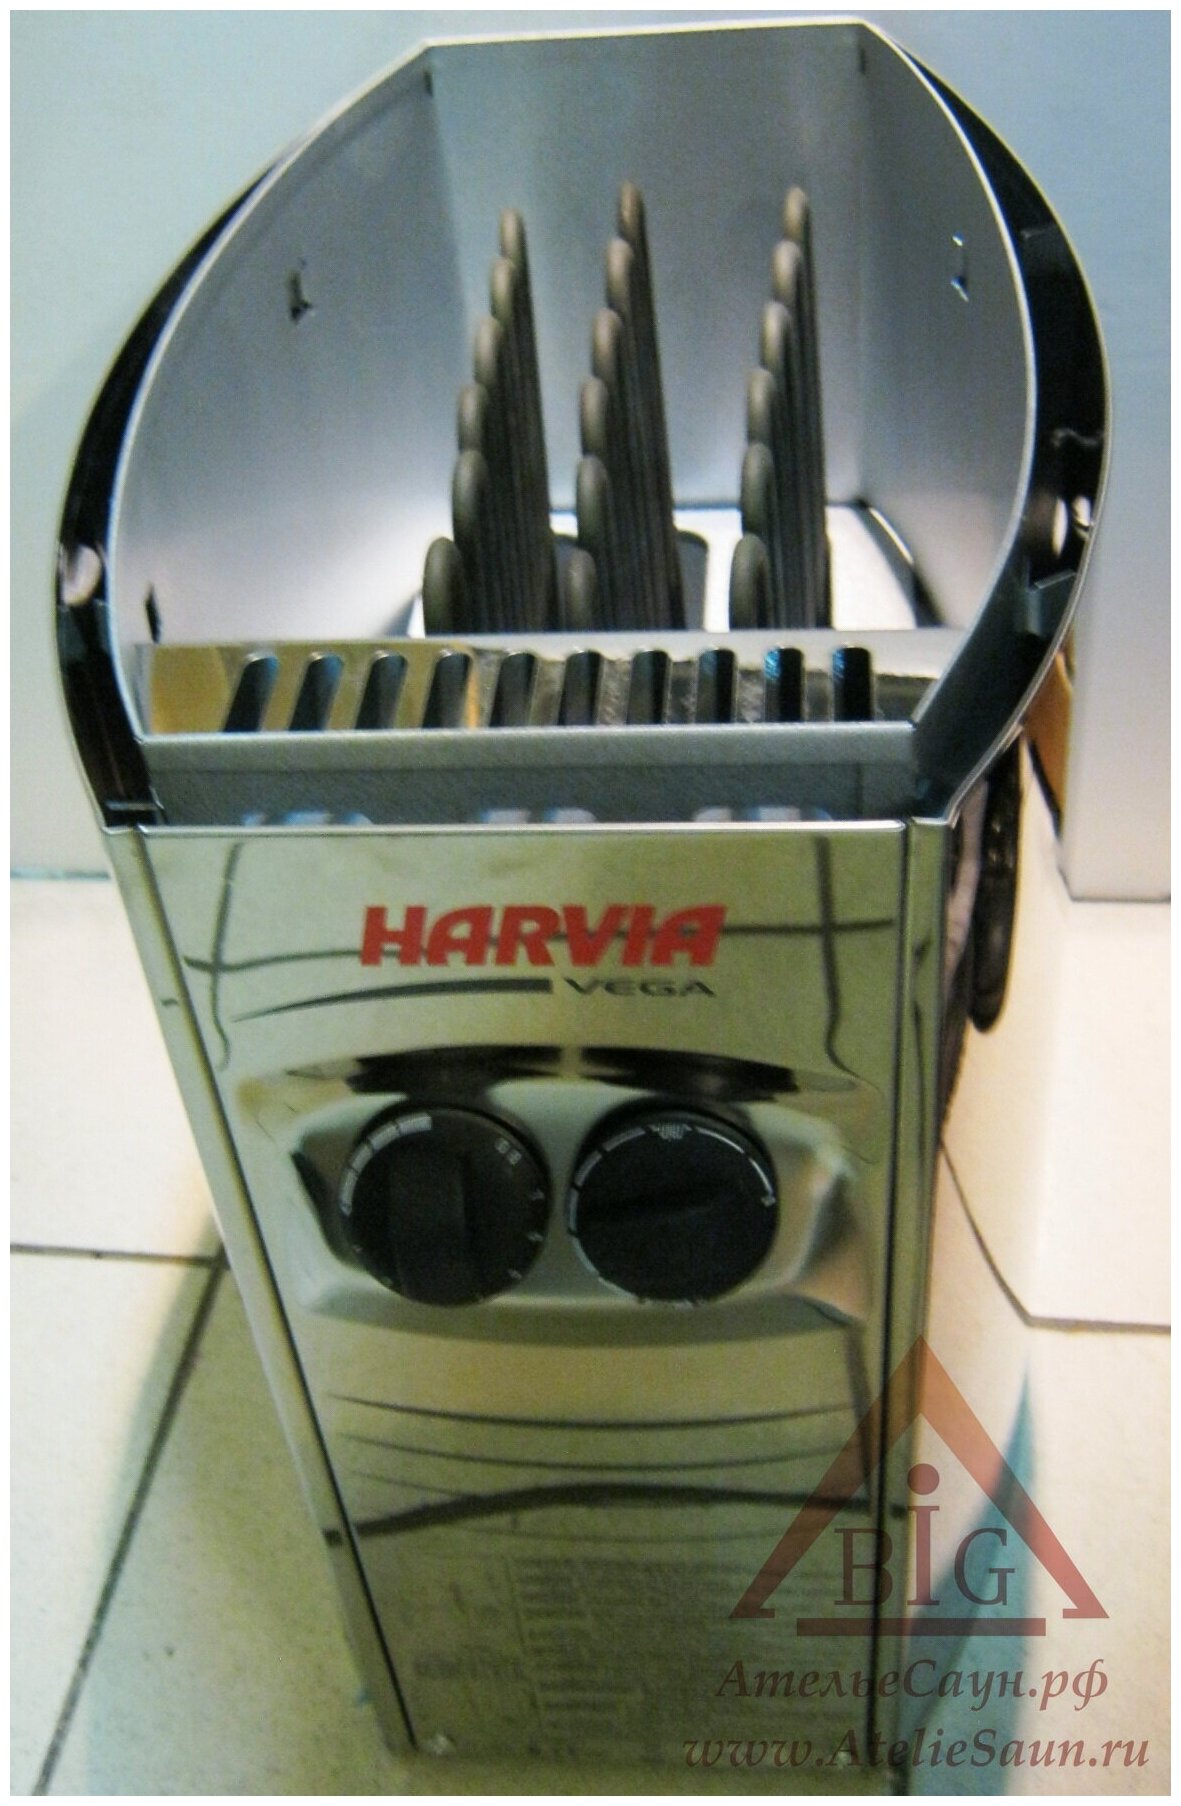 HARVIA Электрическая печь Vega HCB800400S BC80 со встроенным пультом, артикул HCB800400S